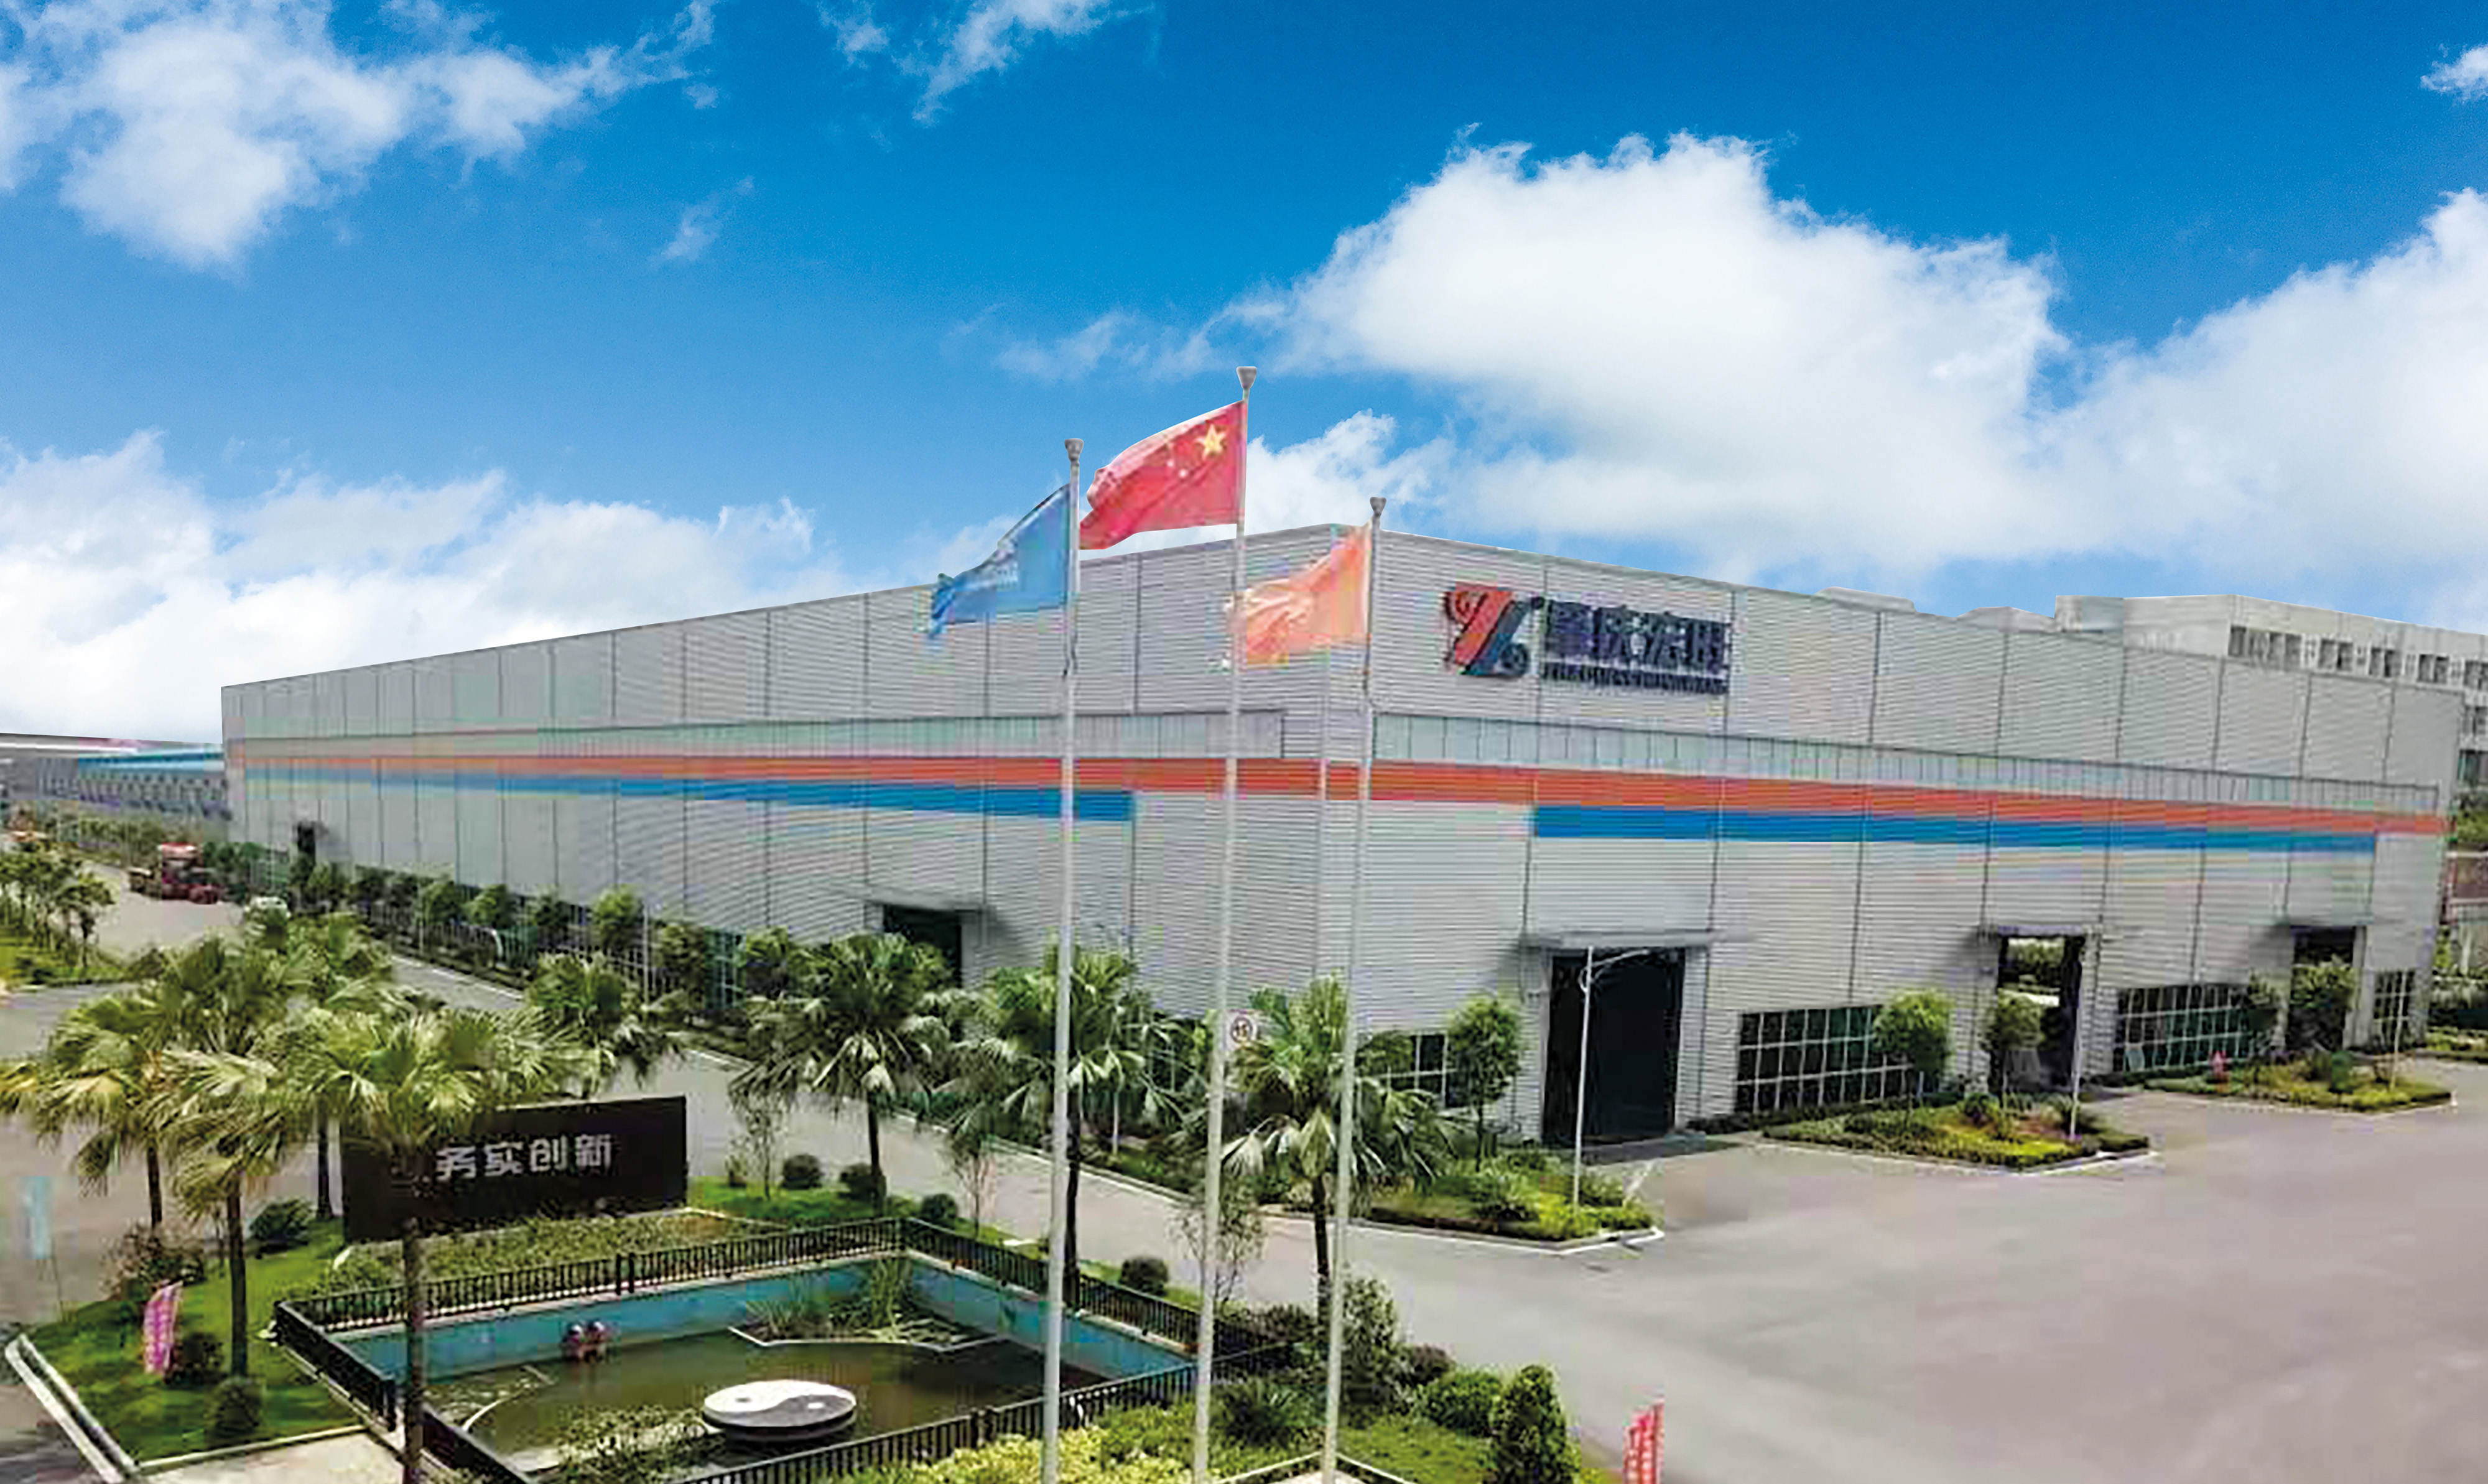 2006 년에 설립 된 Foshan Hermdeco steel co., LTD.는 hongwang 그룹에 속하며 10 년 이상 스테인리스 스틸의 혁신과 품질에 전념해 왔으며 현재는 일련의 스테인레스 스틸 소재 디자인으로 발전했습니다. , 대규모 종합 기업 중 하나로 처리.